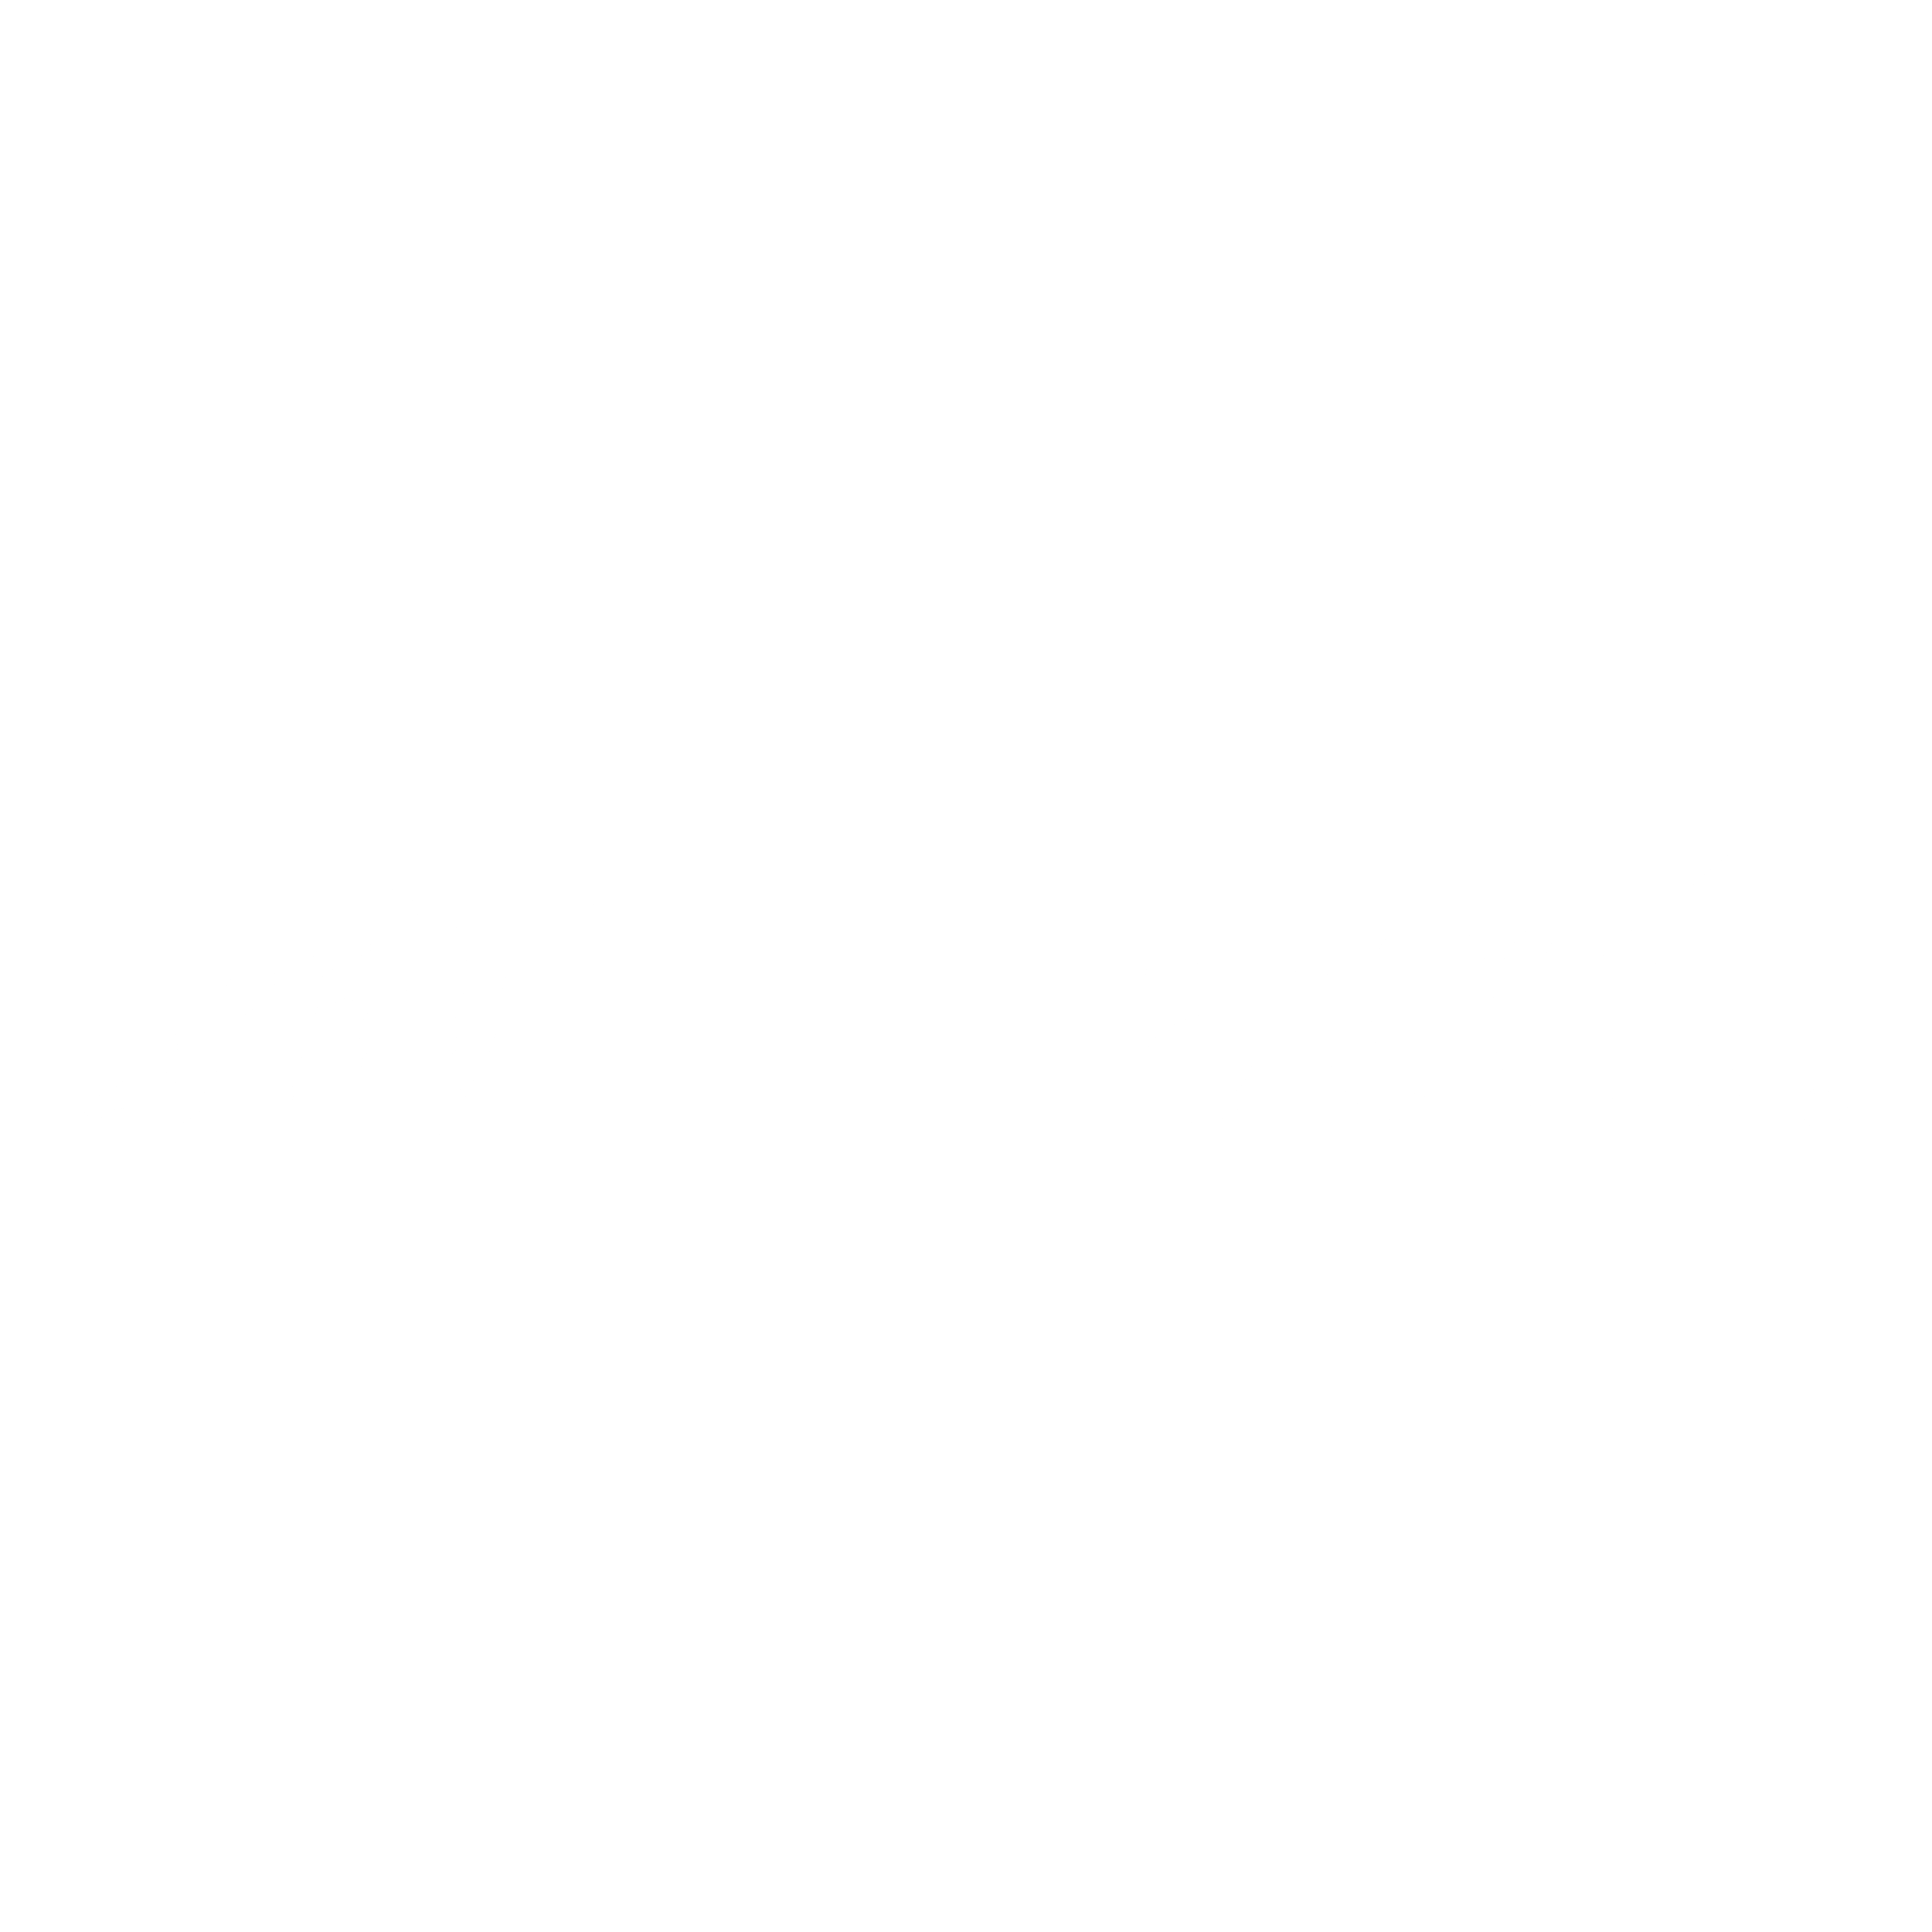 Intacct Logo - Intacct Logo PNG Transparent & SVG Vector